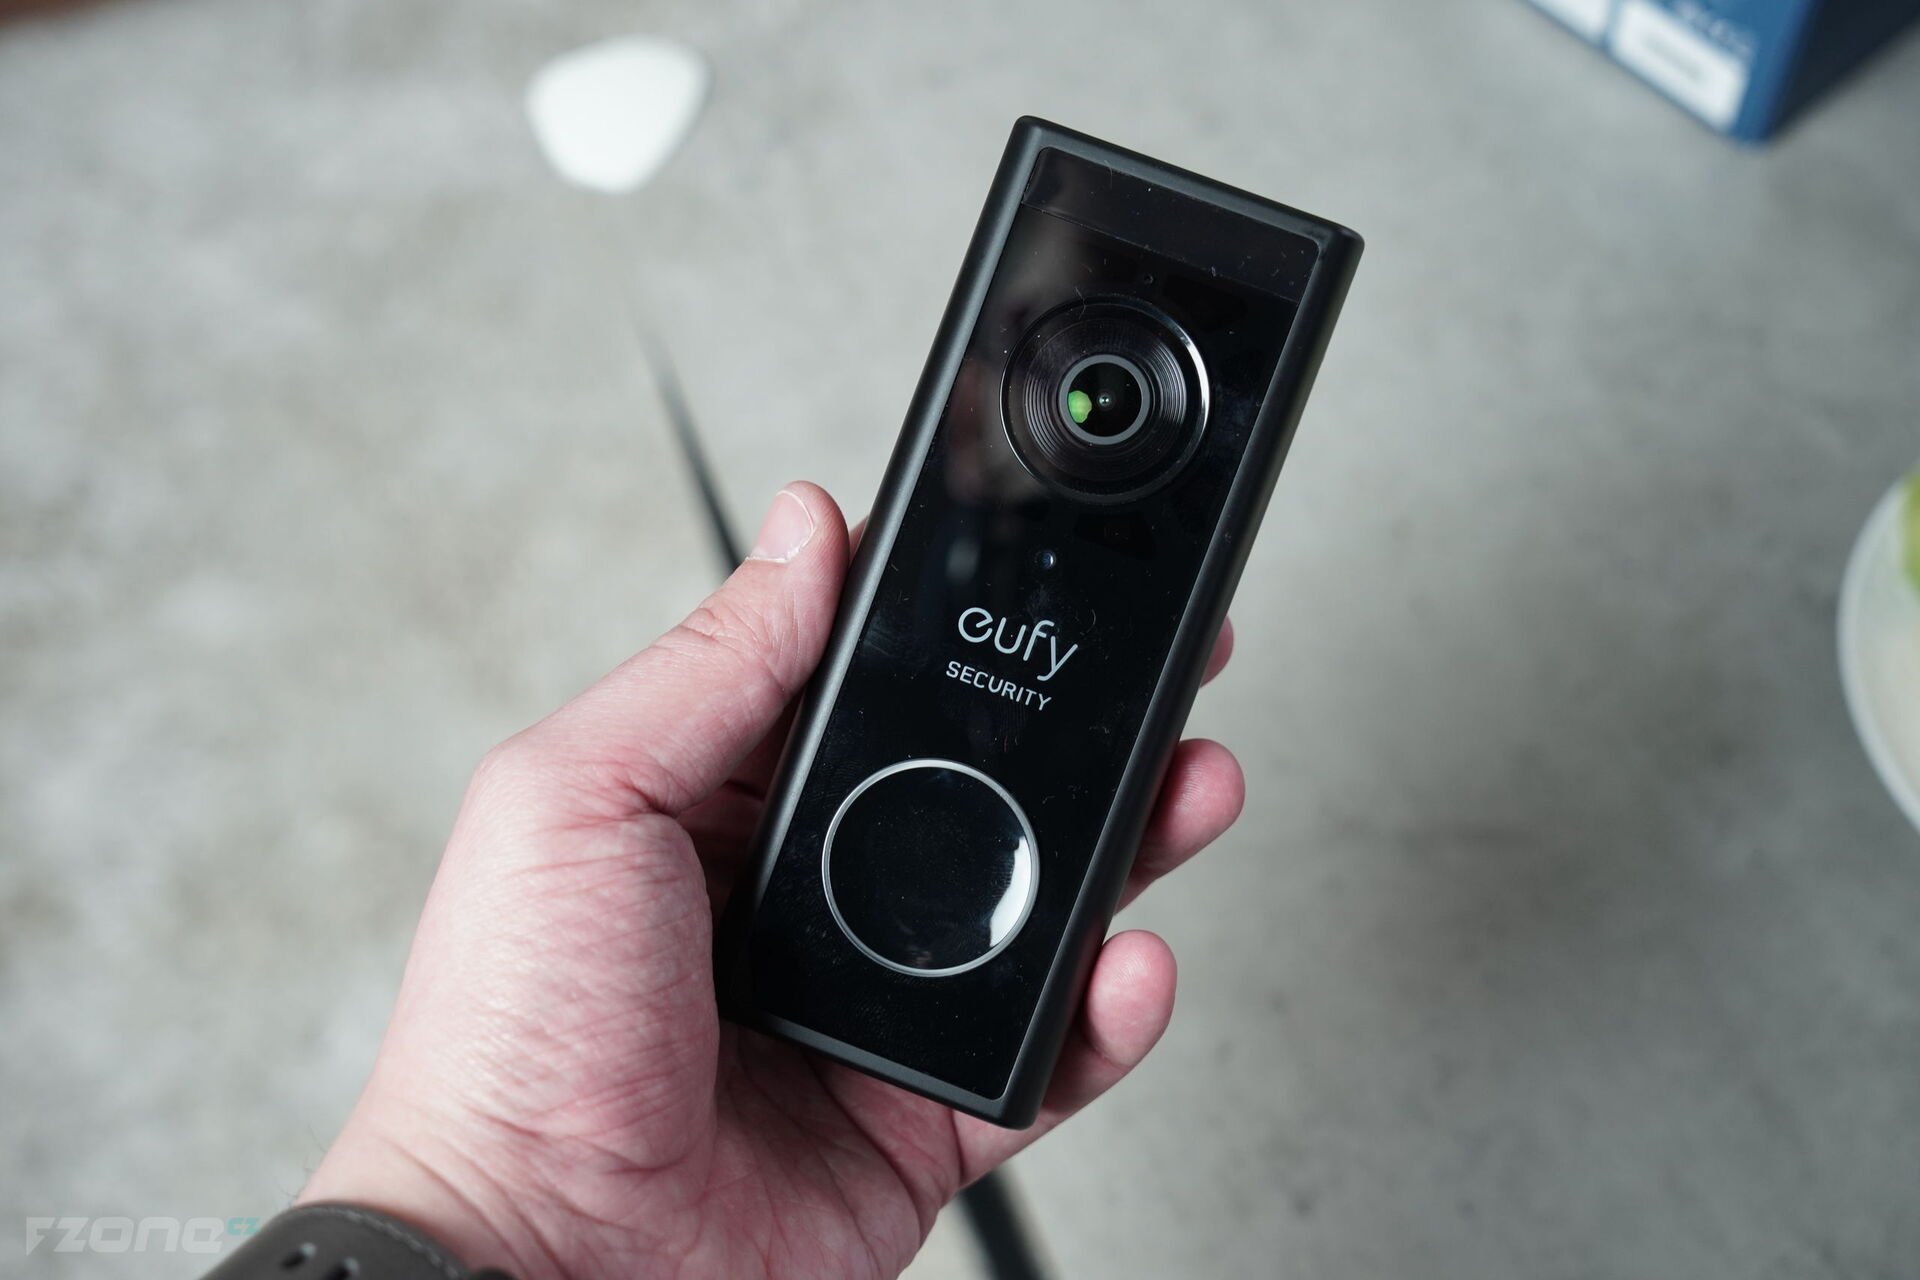 Eufy Video Doorbell 2K